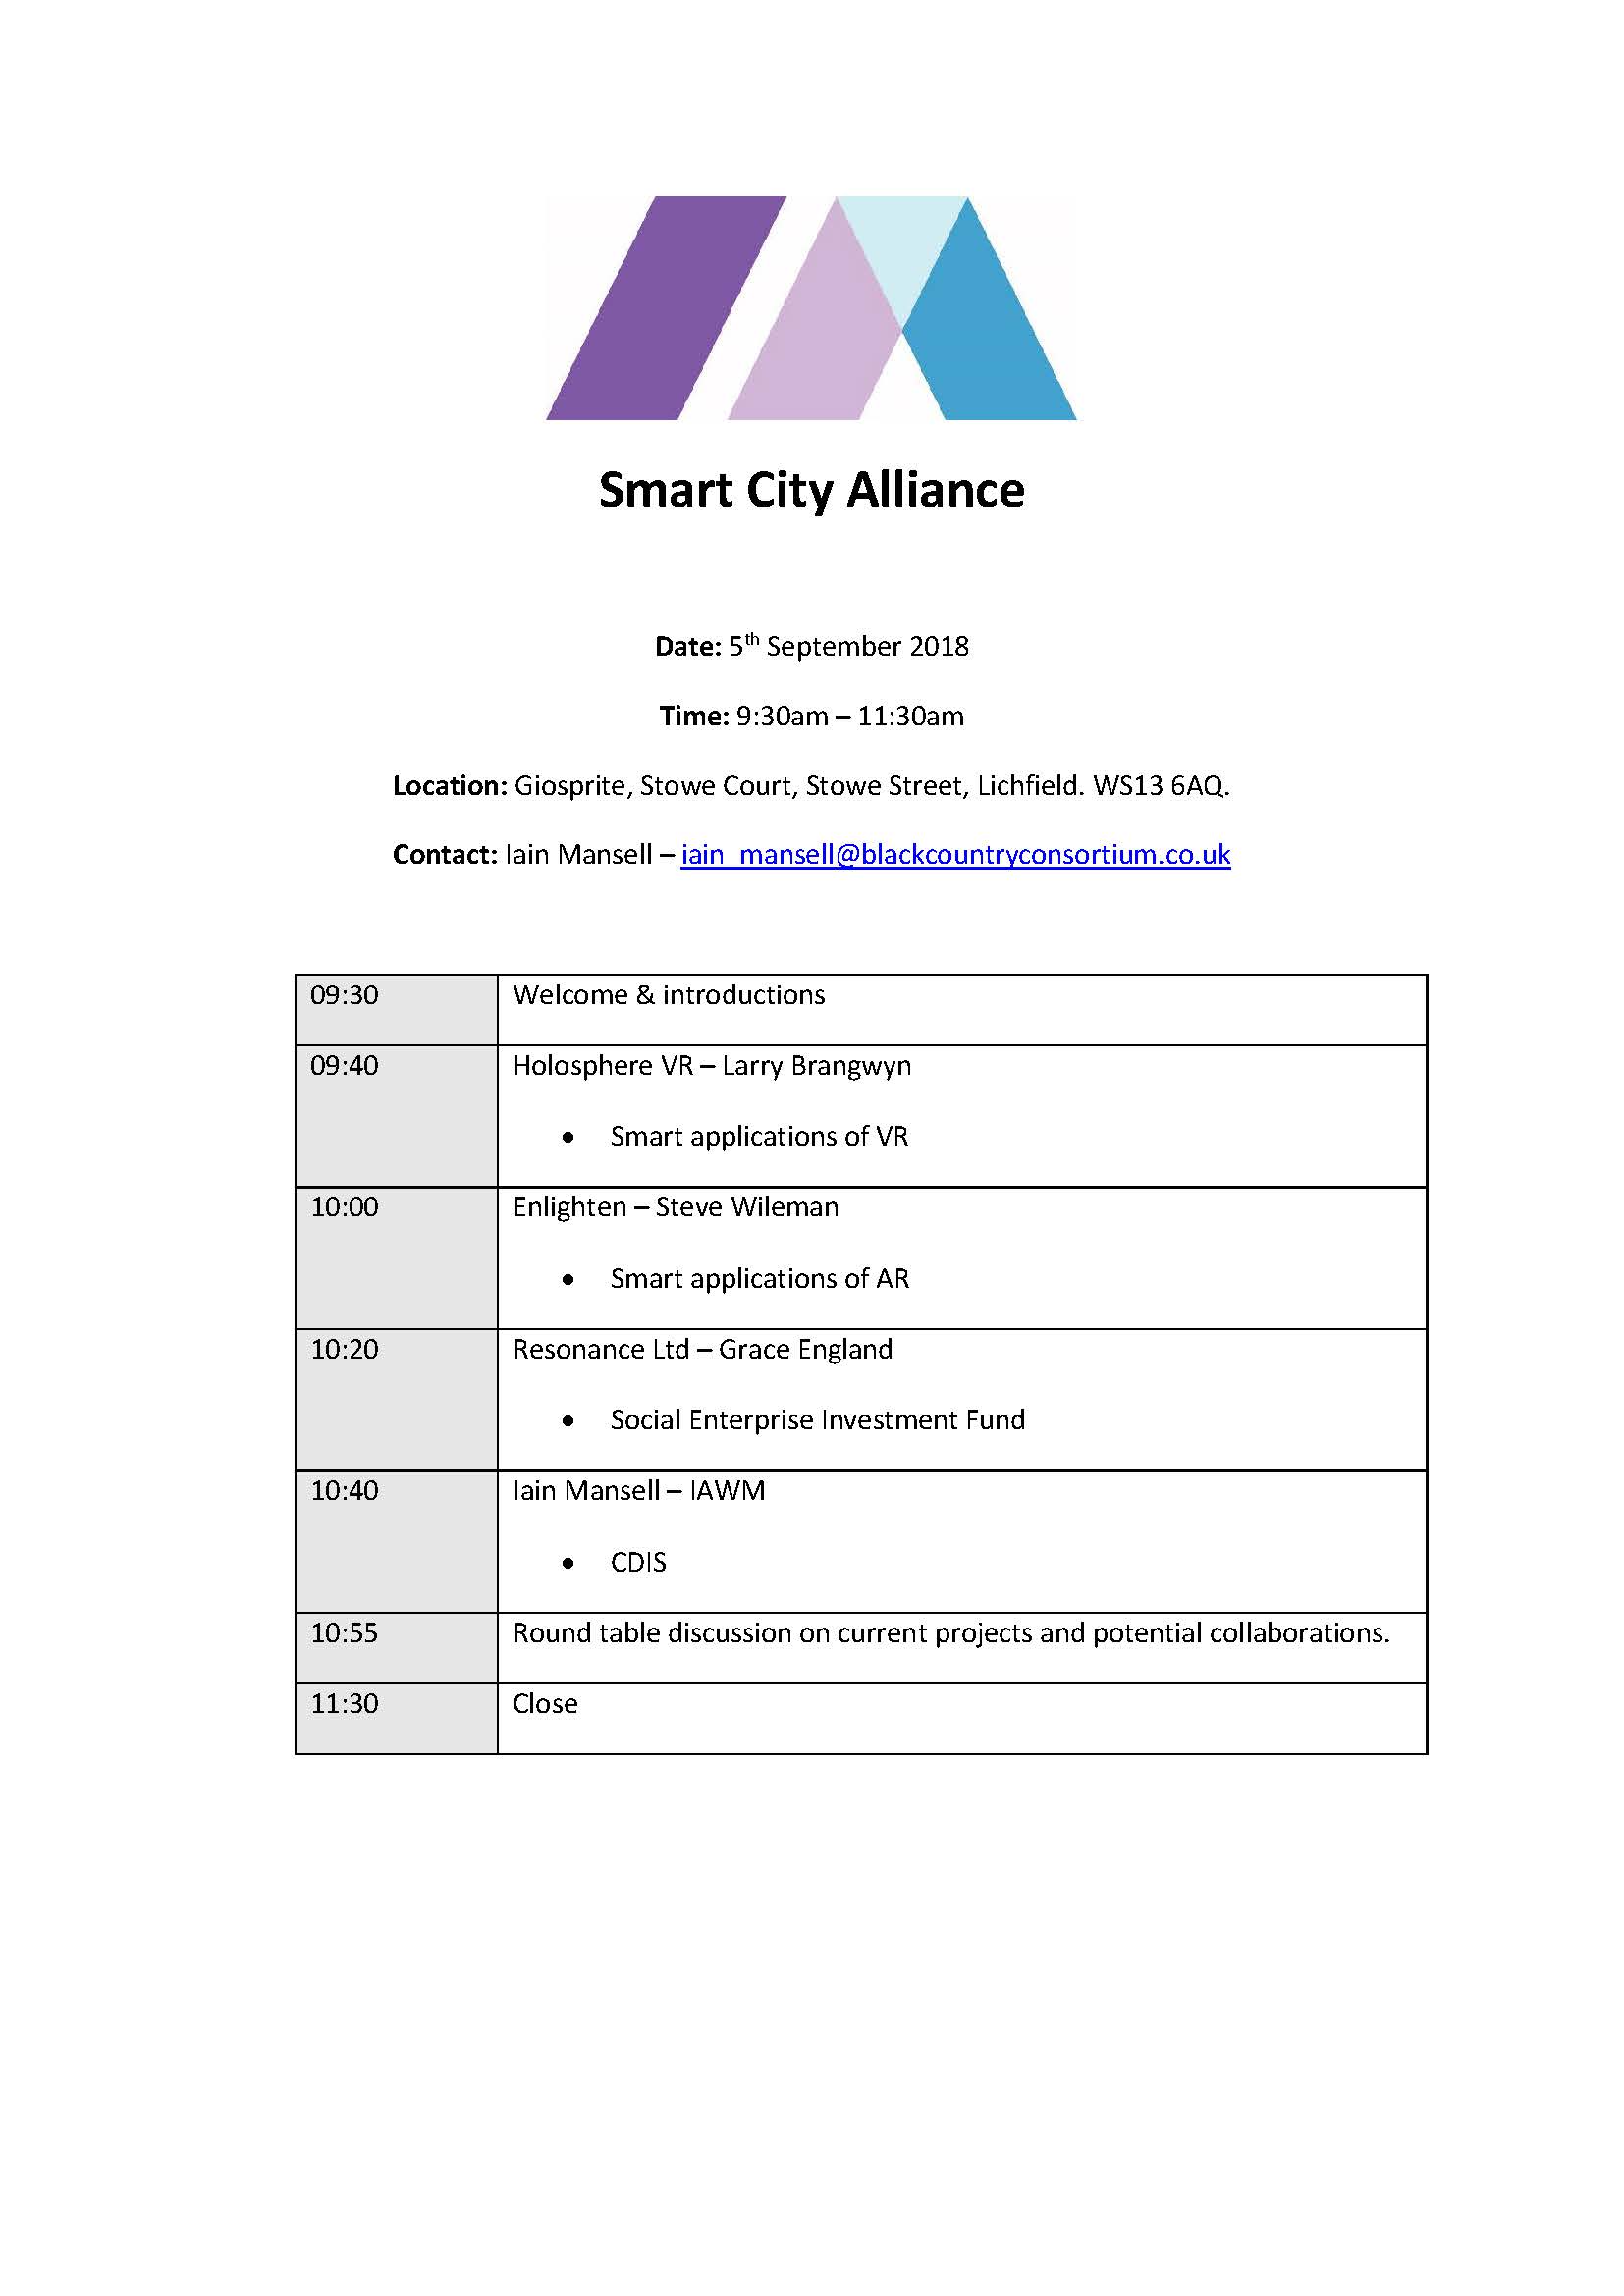 Smart City Alliance Agenda 05.09.18 v2